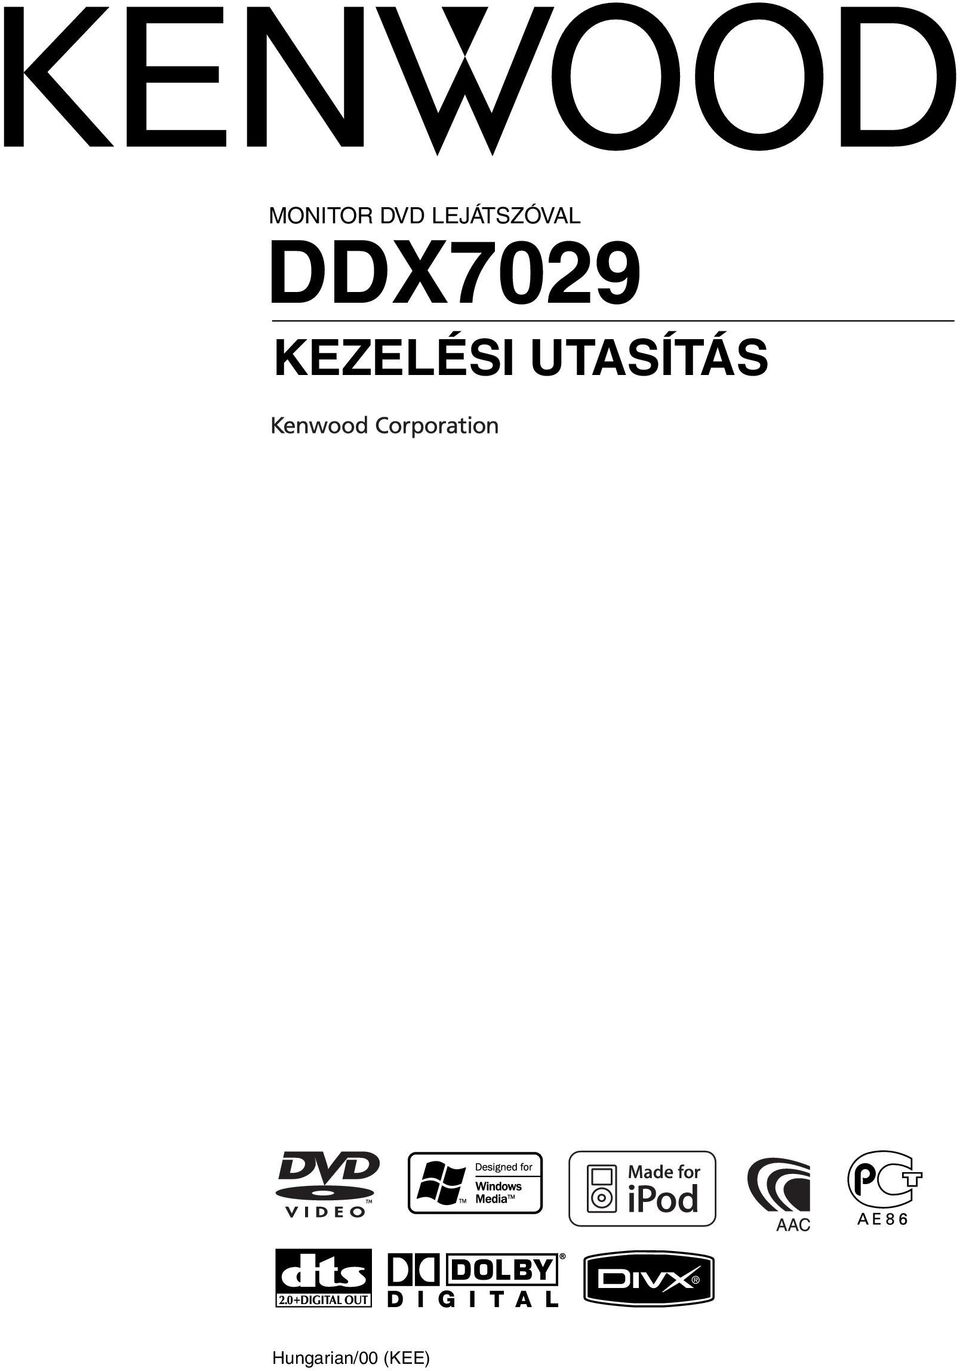 DDX709 KEZELÉSI